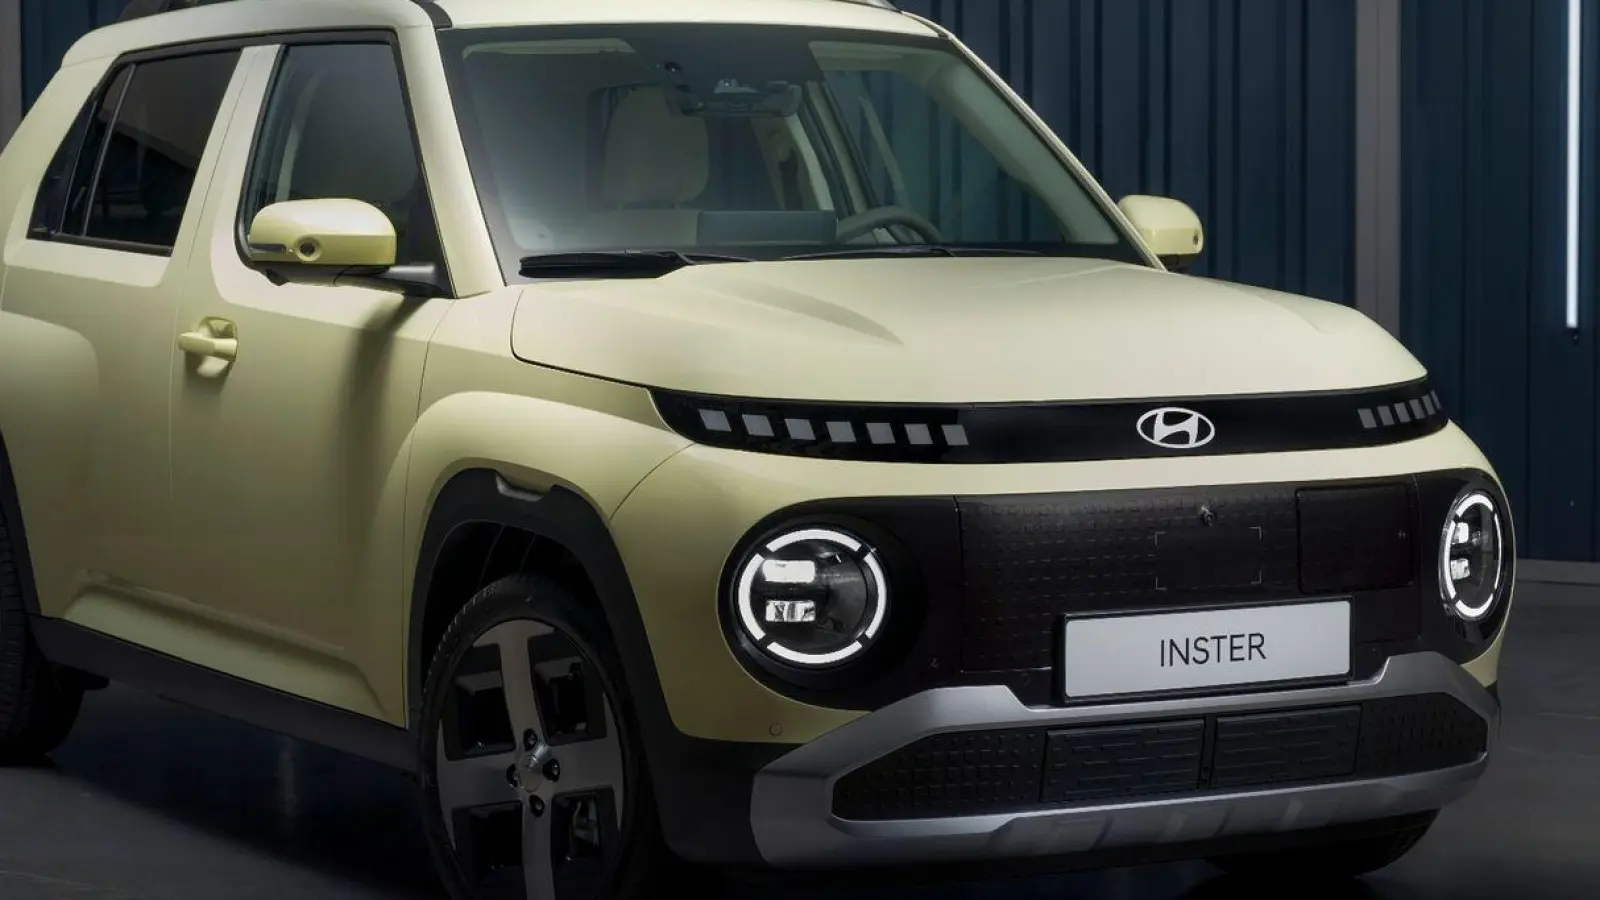 Hyundai kontert im Preiskampf: Der neue Inster soll als erschwinglicher Elektro-Kleinwagen gegen Modelle der Konkurrenz antreten. (Foto: Frederick Unflath/Hyundai/dpa-tmn)